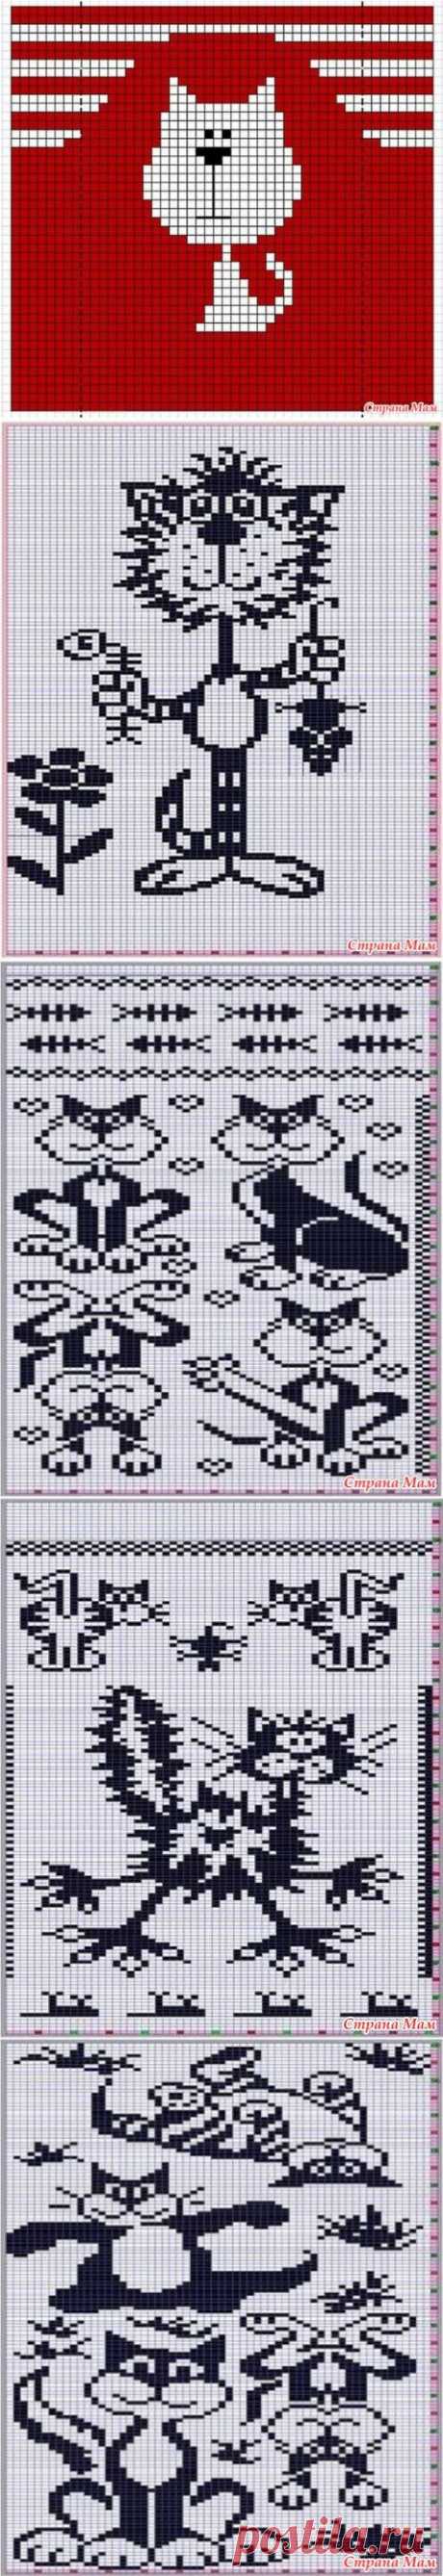 Котосхемы (узоры для вязания пледов и свитеров) - Вязание - Страна Мам